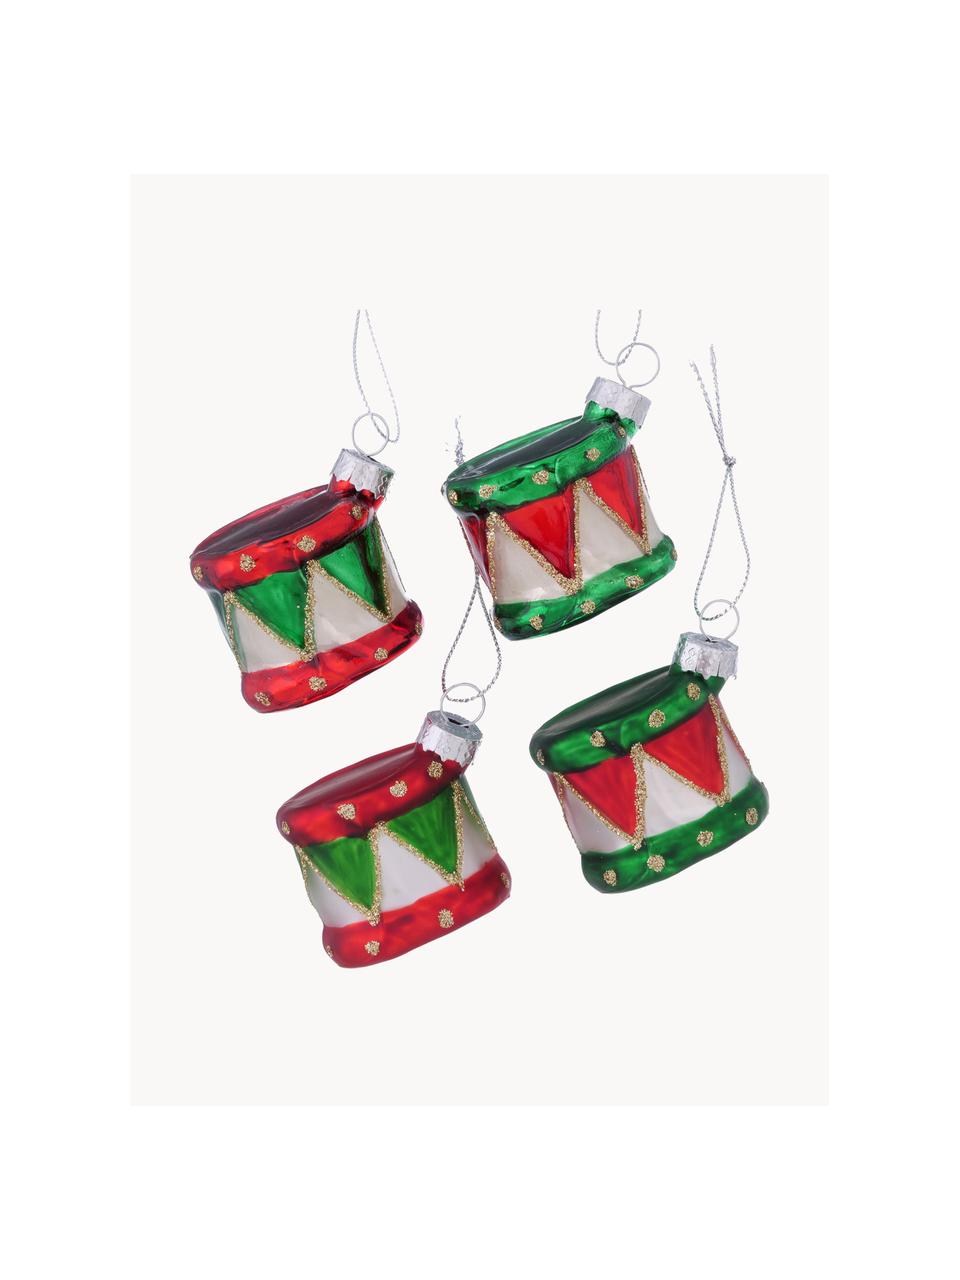 Sada vánočních ozdob Drummy, 4 díly, Lakované sklo, Zelená, červená, Š 6 cm, V 5 cm